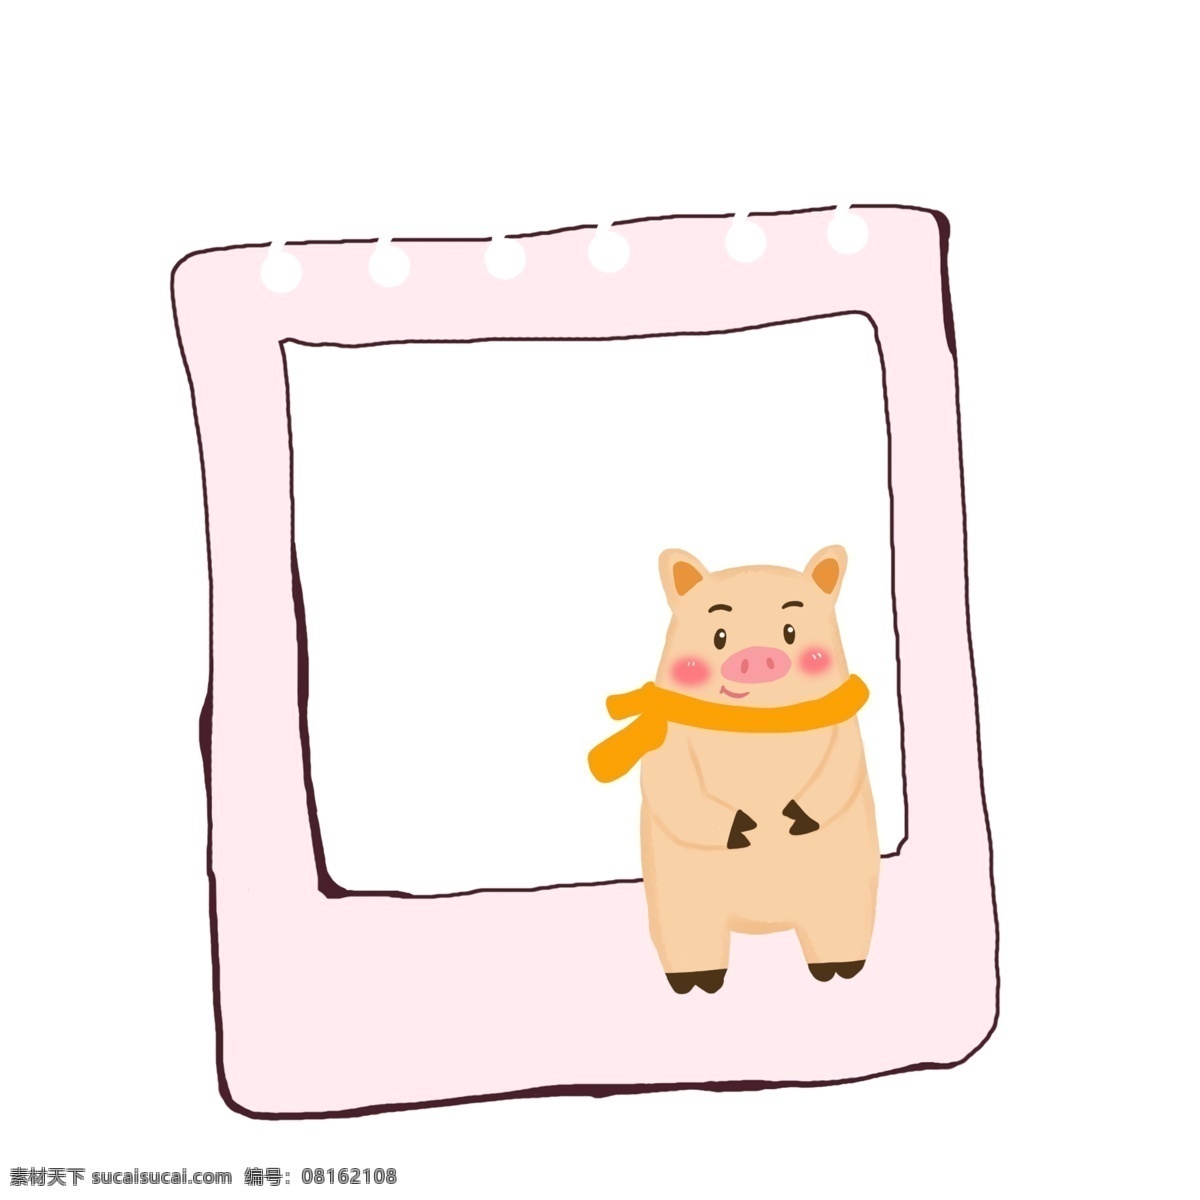 卡通 粉色 相框 装饰 图案 方形边框 粉色相框 粉色边框 手绘相框 边框 动物相框 矢量相框 免扣边框